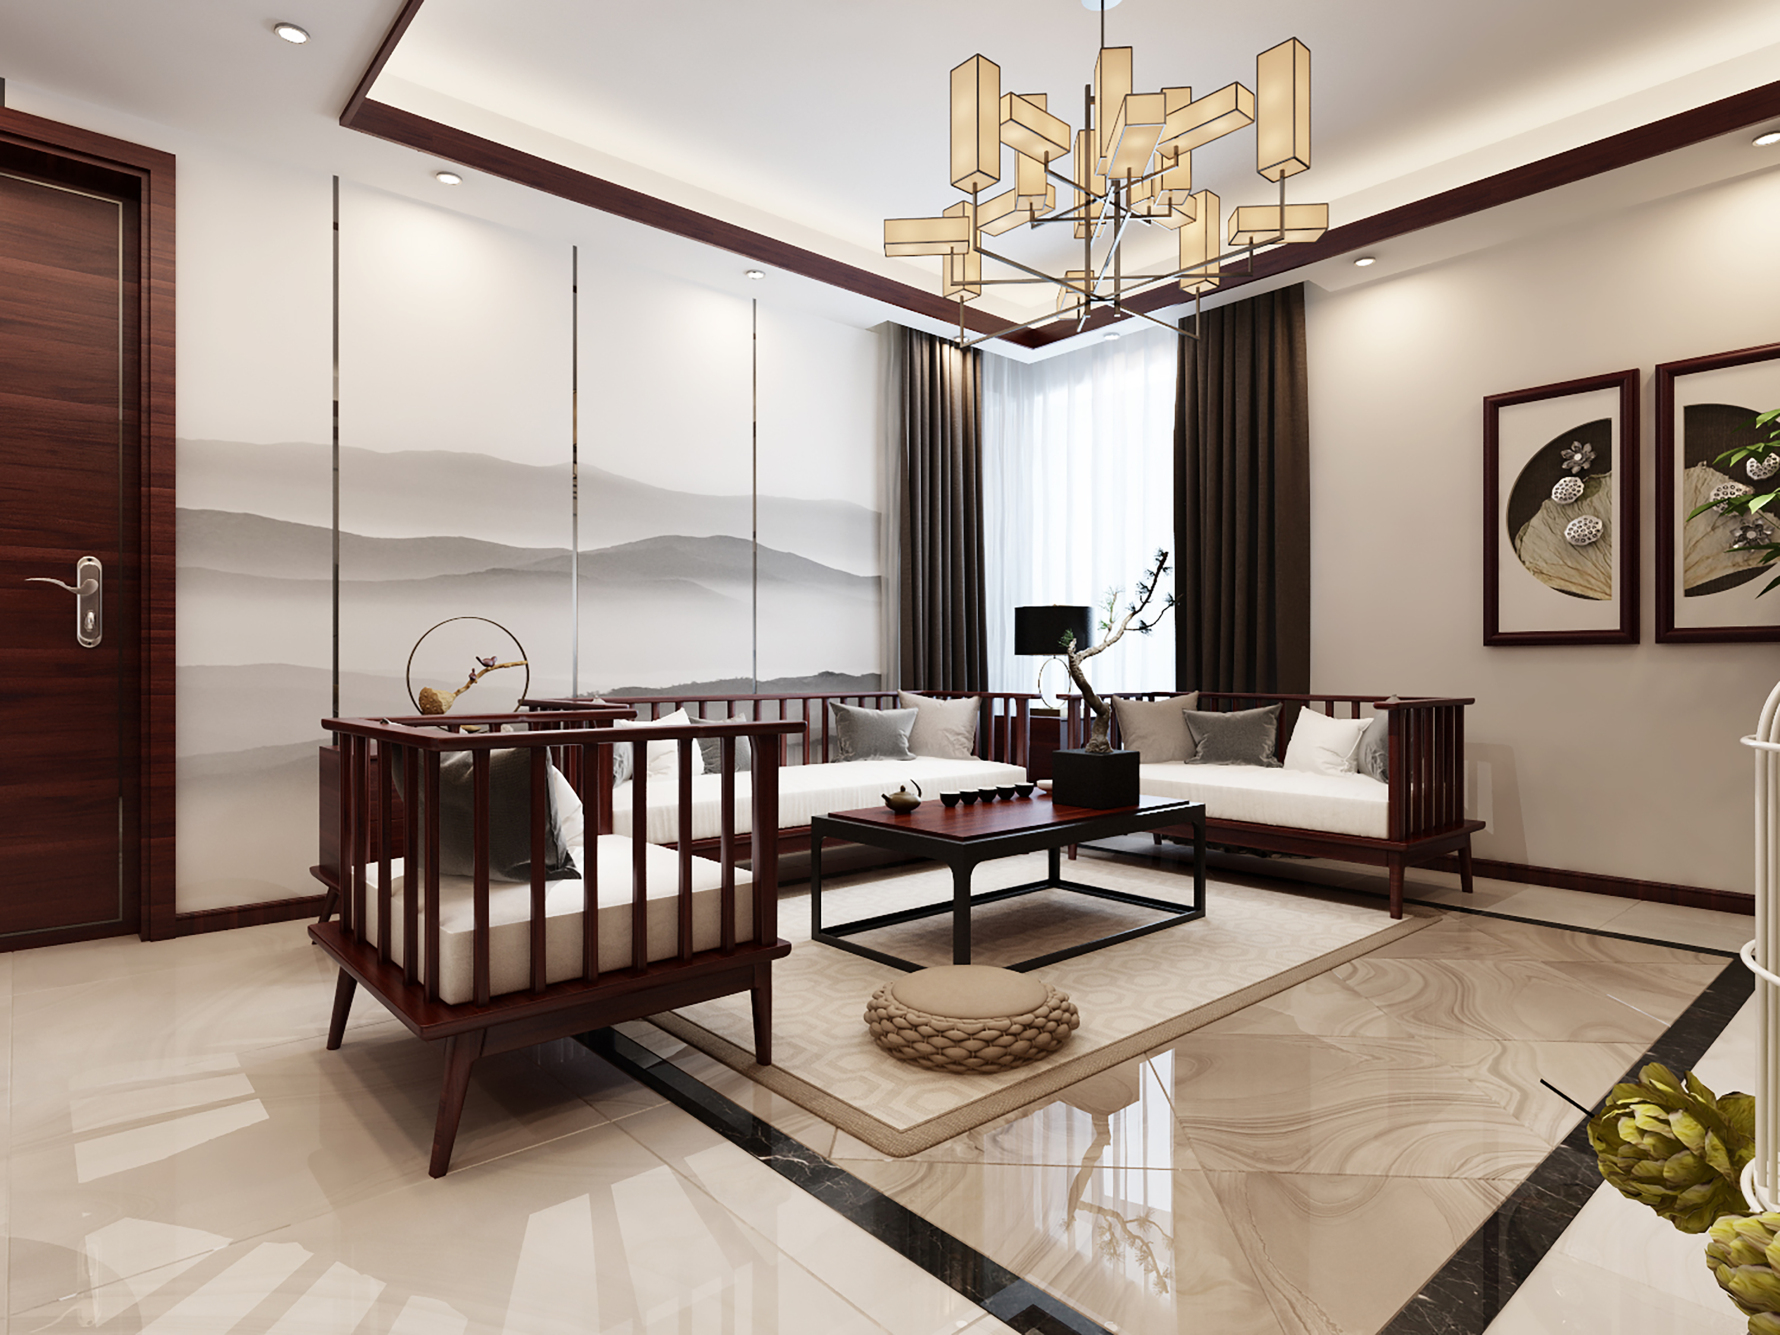 新中式极简主义 - 中式风格三室一厅一卫装修效果图